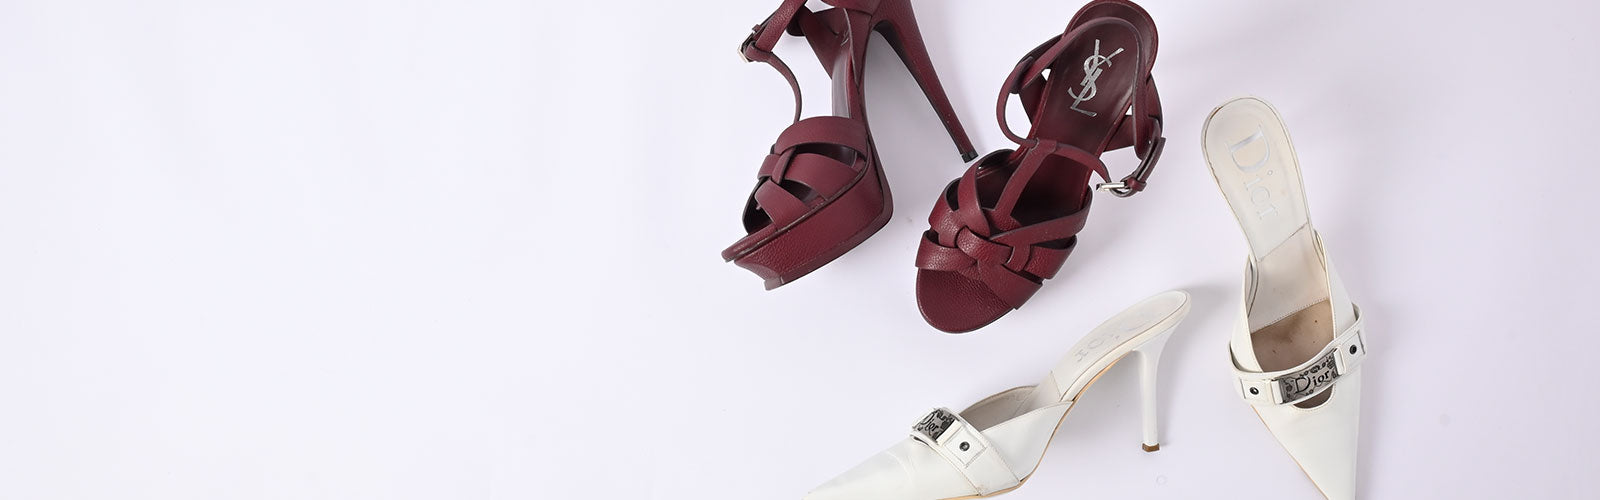 Louis Vuitton Insider Ballet Flat Slingback Ballerina Shoes Sz 38